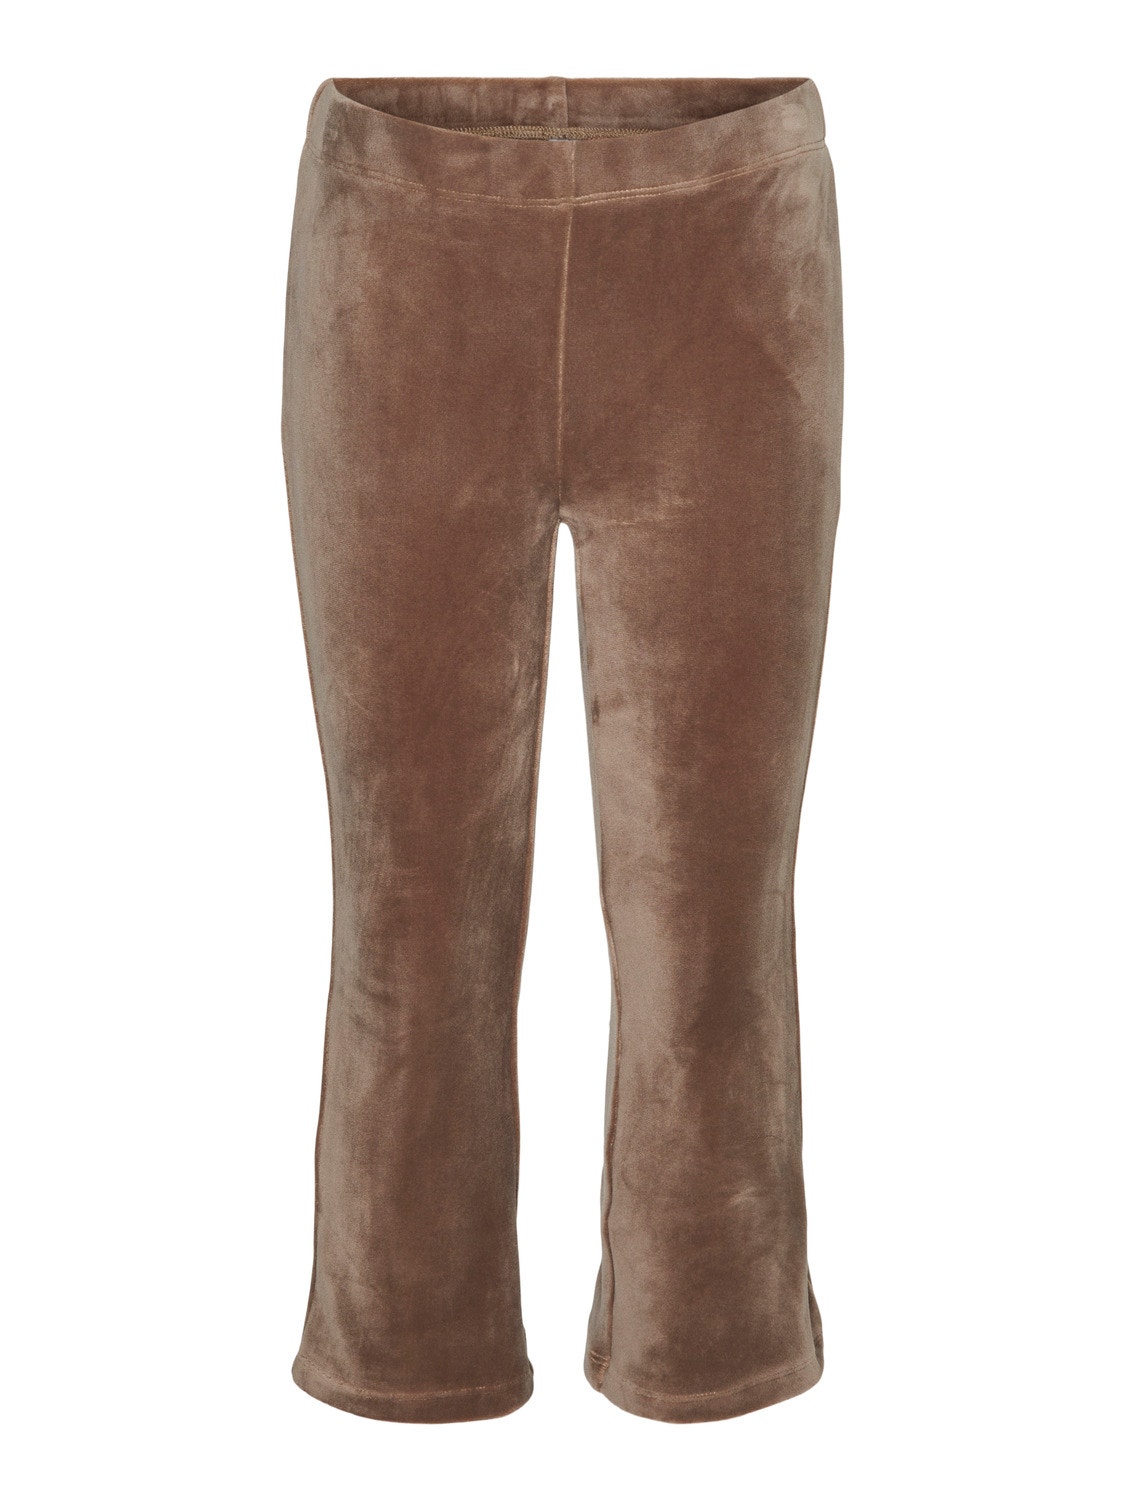 Vero Moda VMVELVET Trousers -Brown Lentil - 10294476